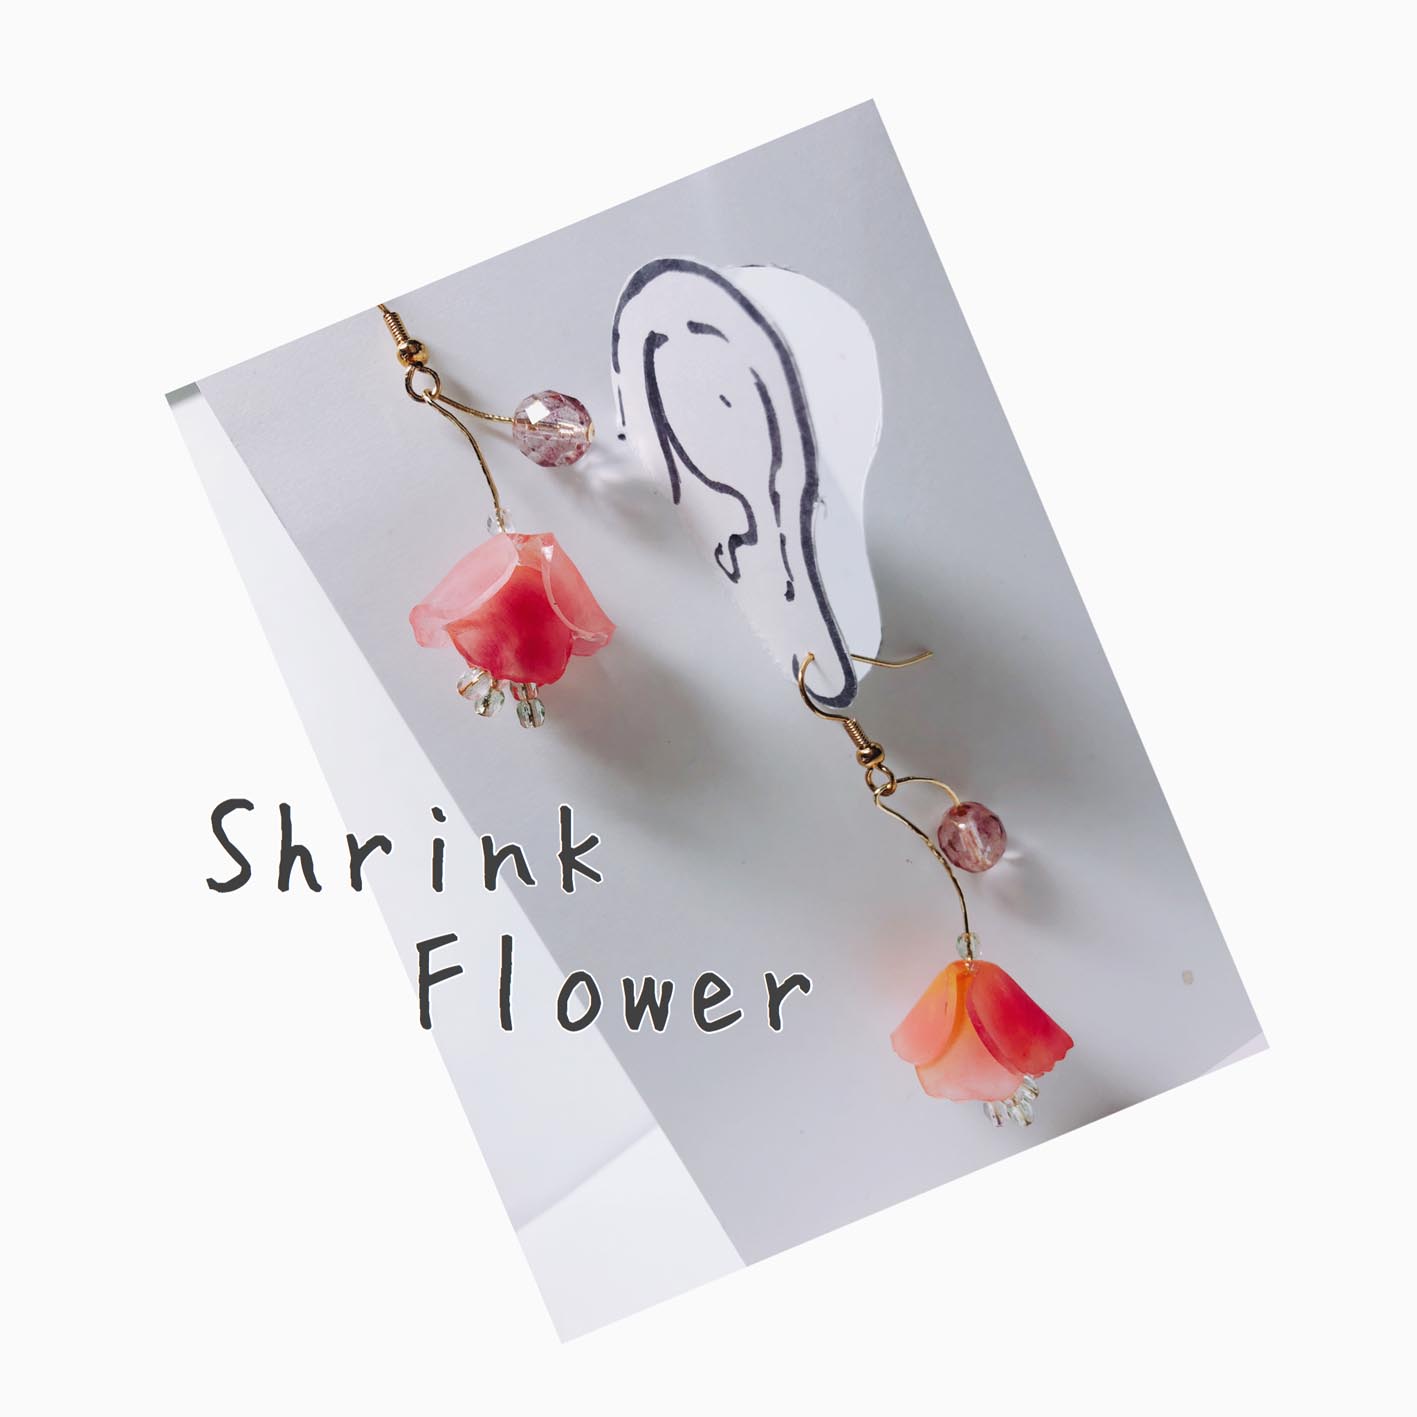 動画あり ２枚のプラバンパーツで立体的な花プラバンアクセサリーの作り方 Suisuisuizoo